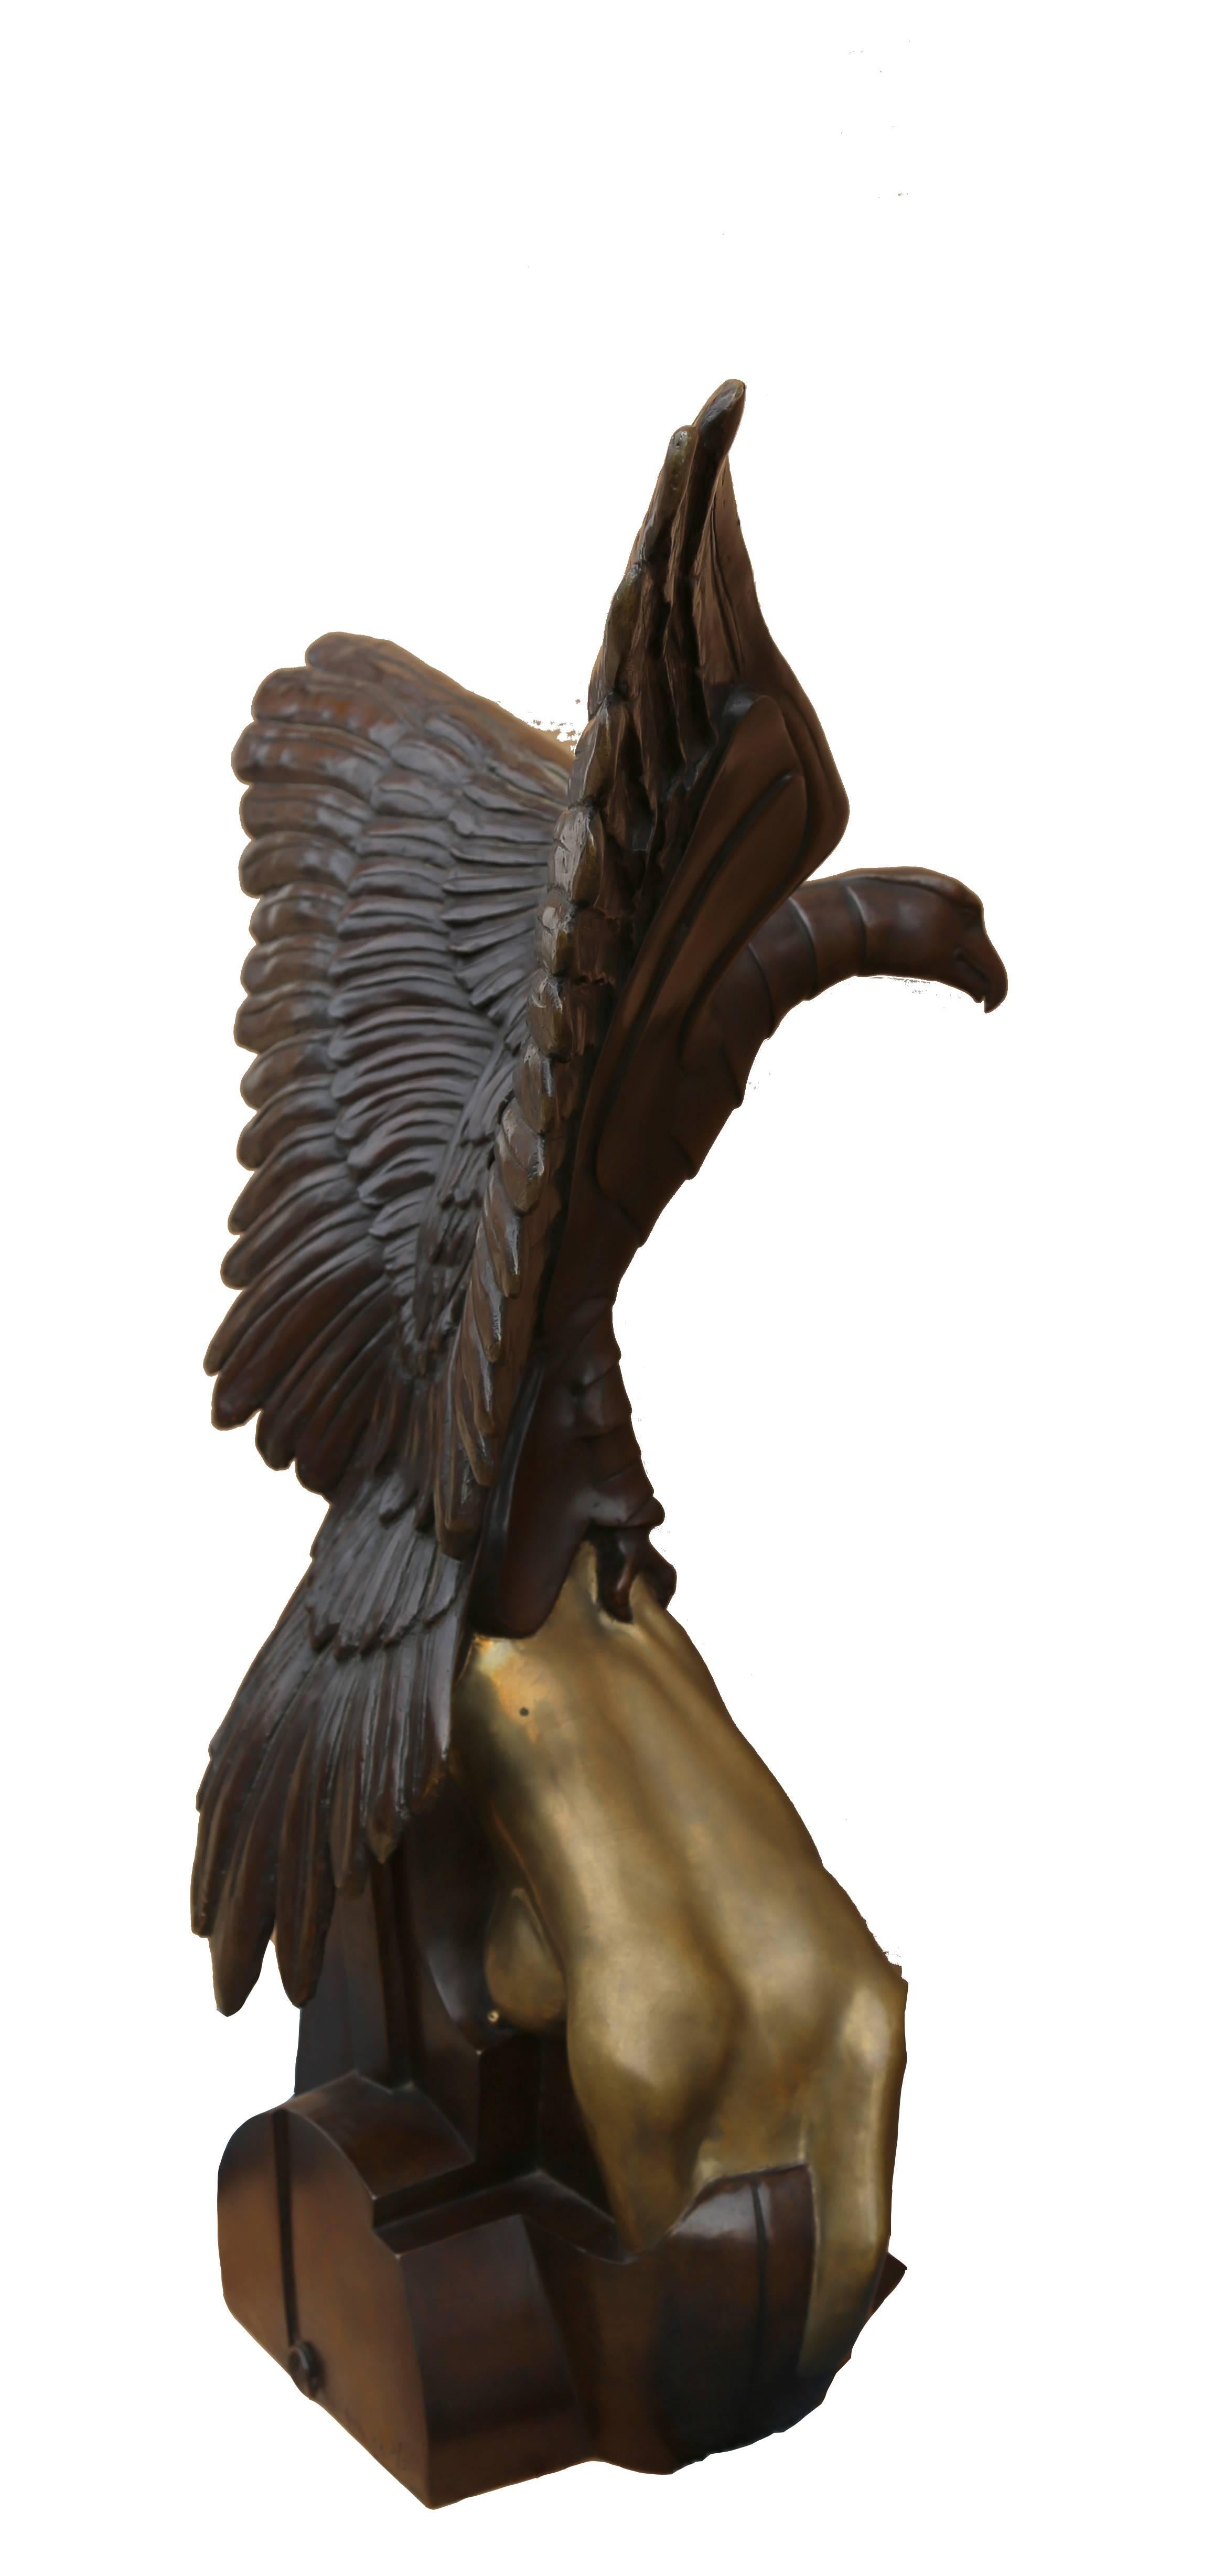 Hawk with Woman - Sculpture by Arturo Di Modica